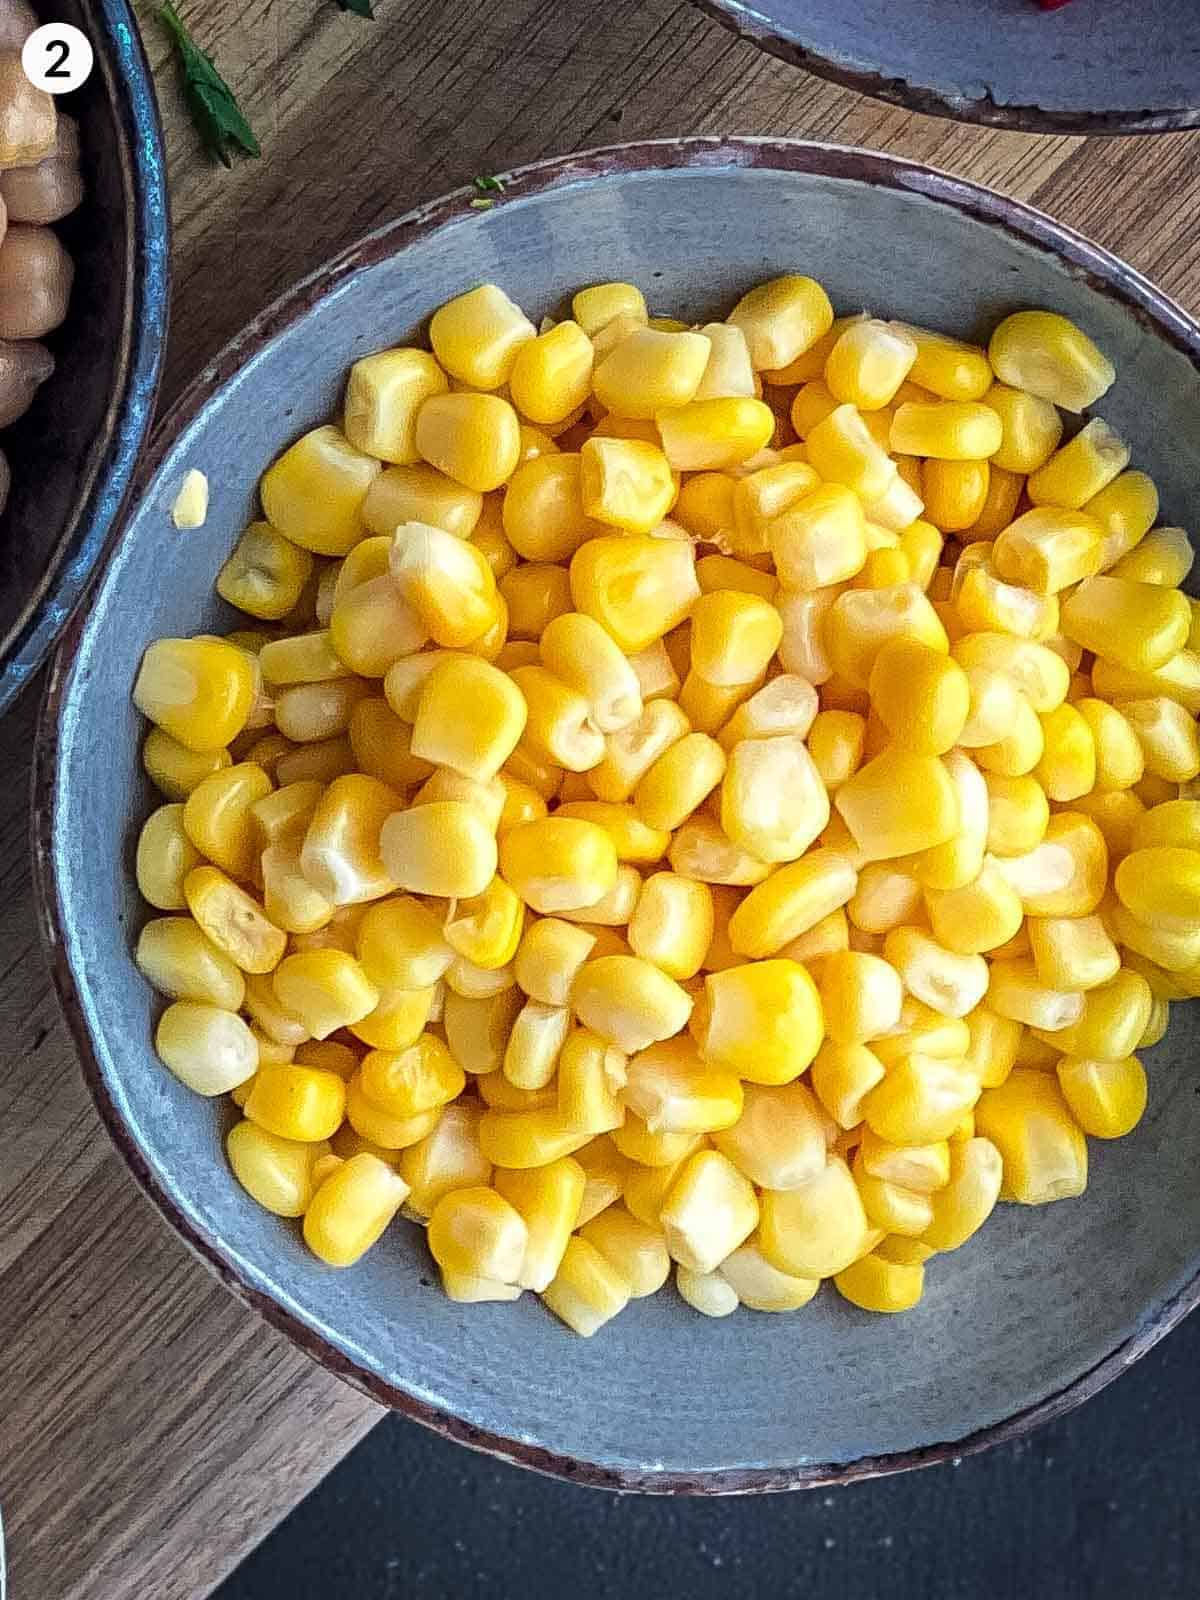 Corn kernels in a blue bowl